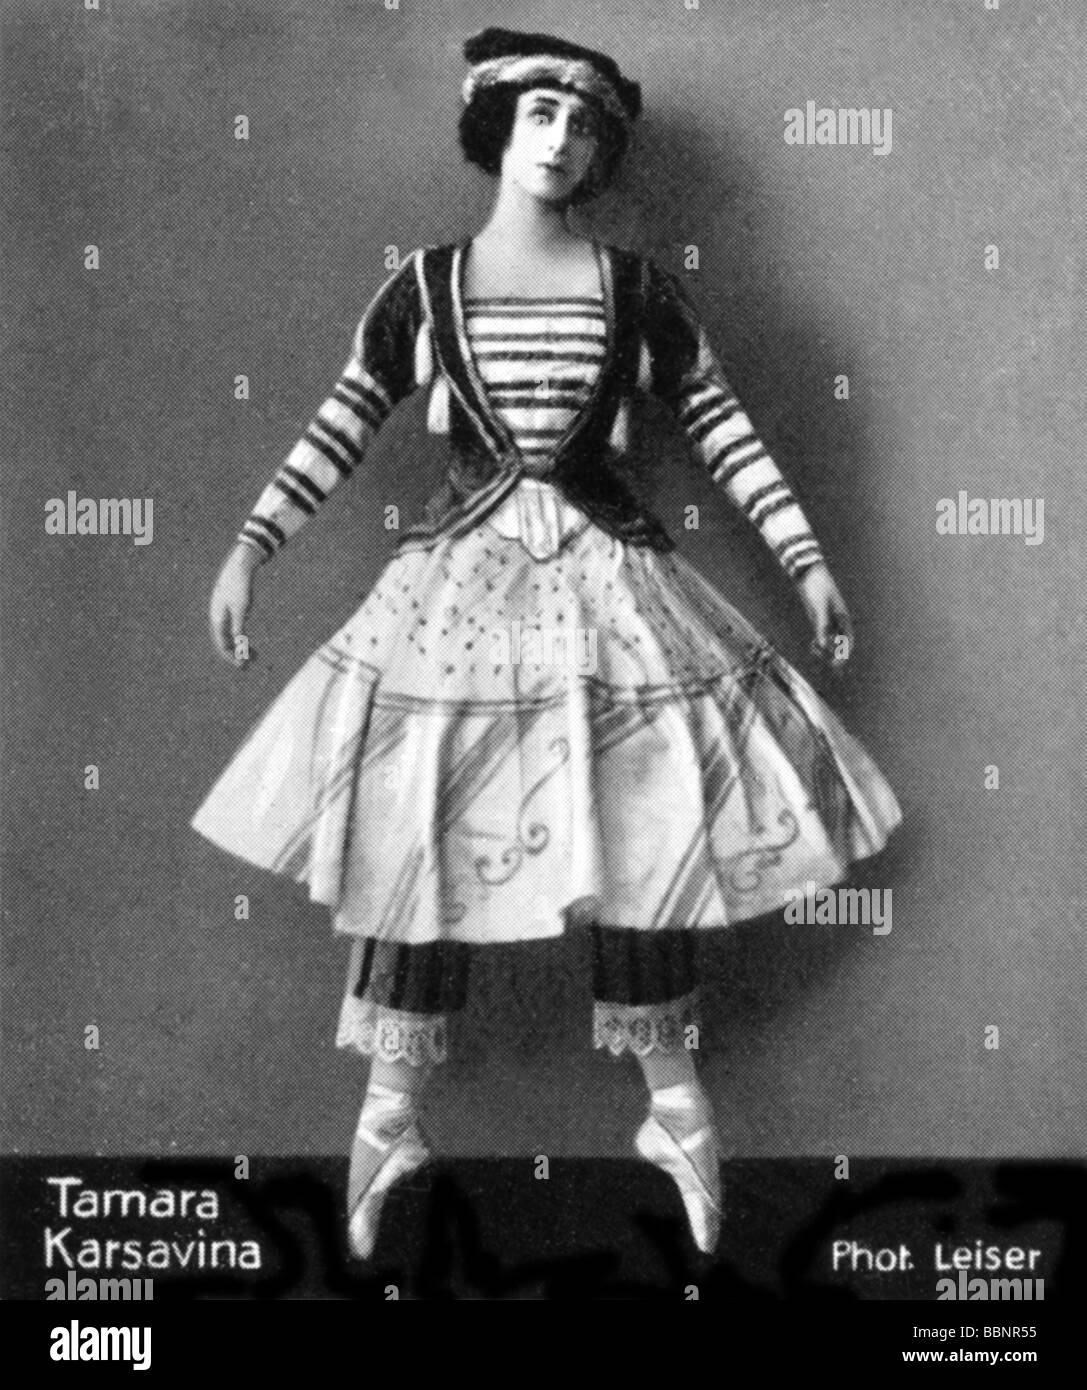 Karsavina, Tamara, 10.3.1885 - 9.3.1885, ballerino inglese di origine russa, in costume, circa 1910, Foto Stock